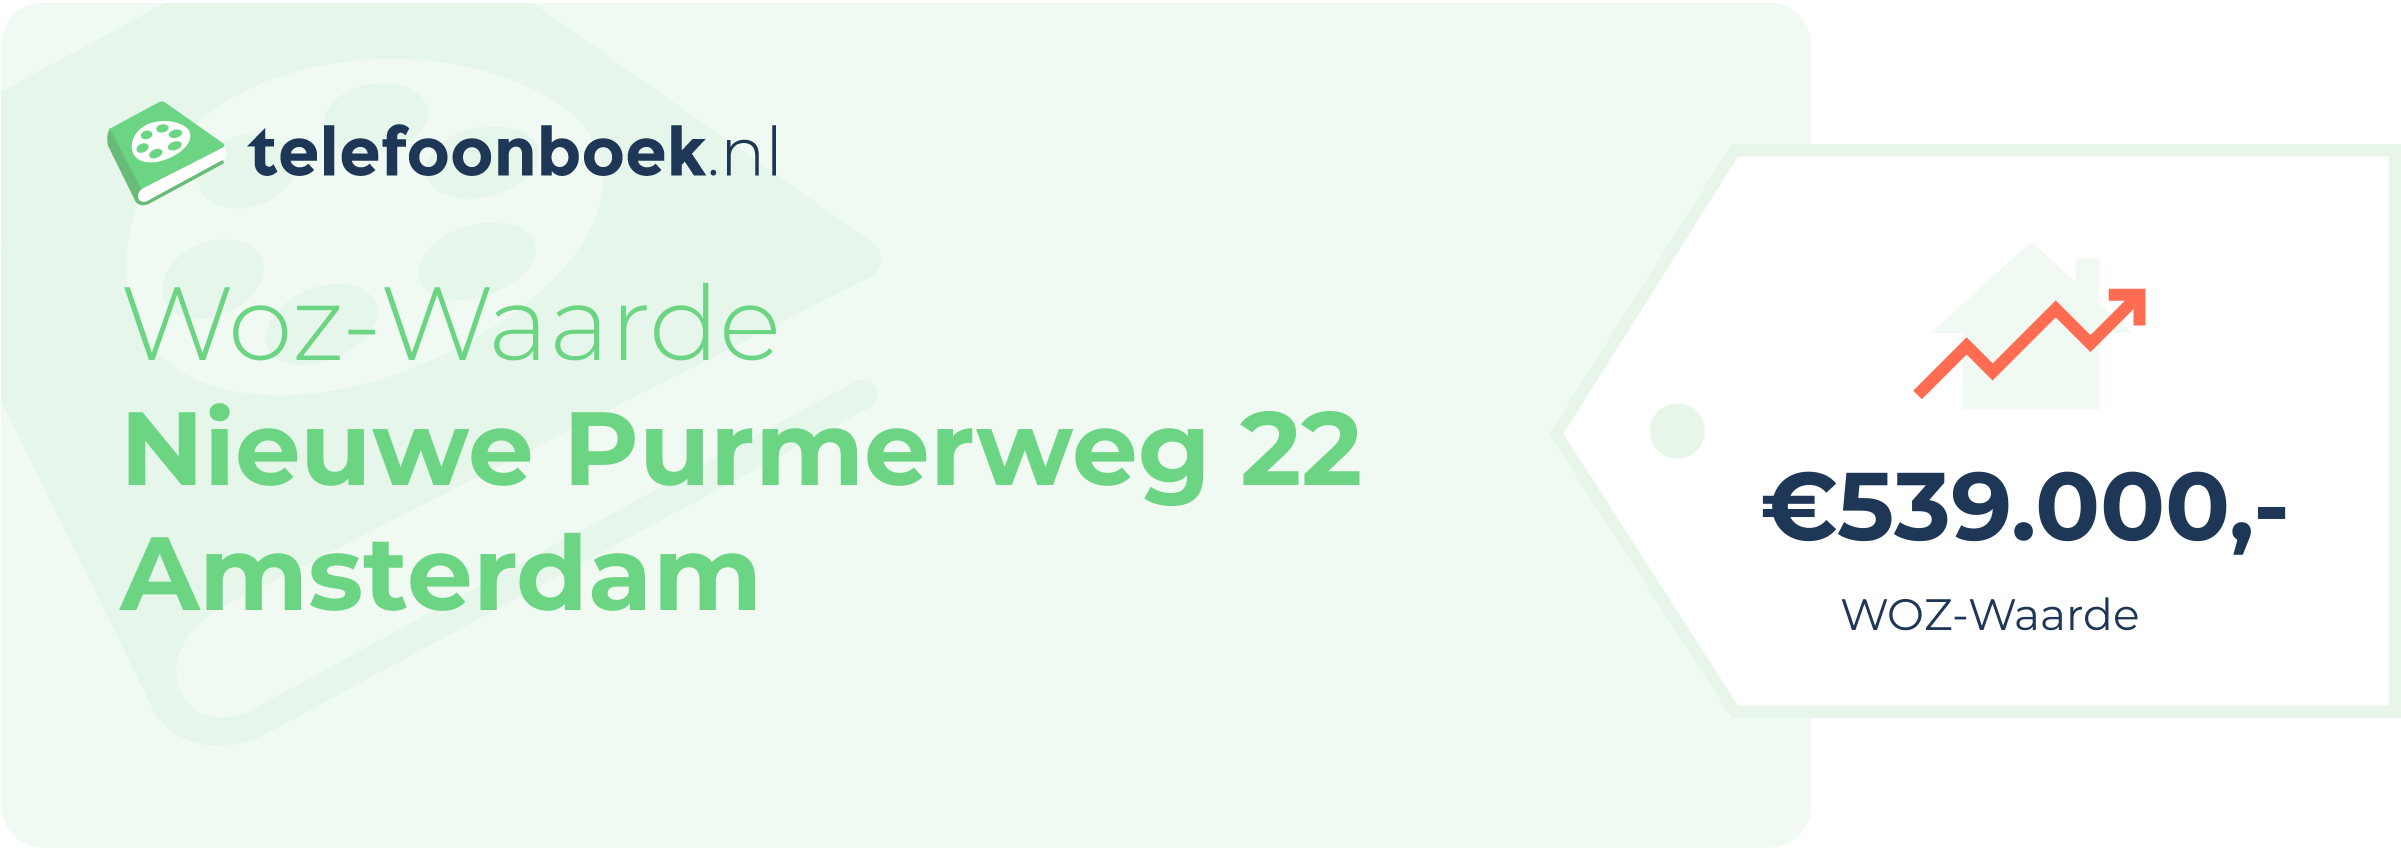 WOZ-waarde Nieuwe Purmerweg 22 Amsterdam